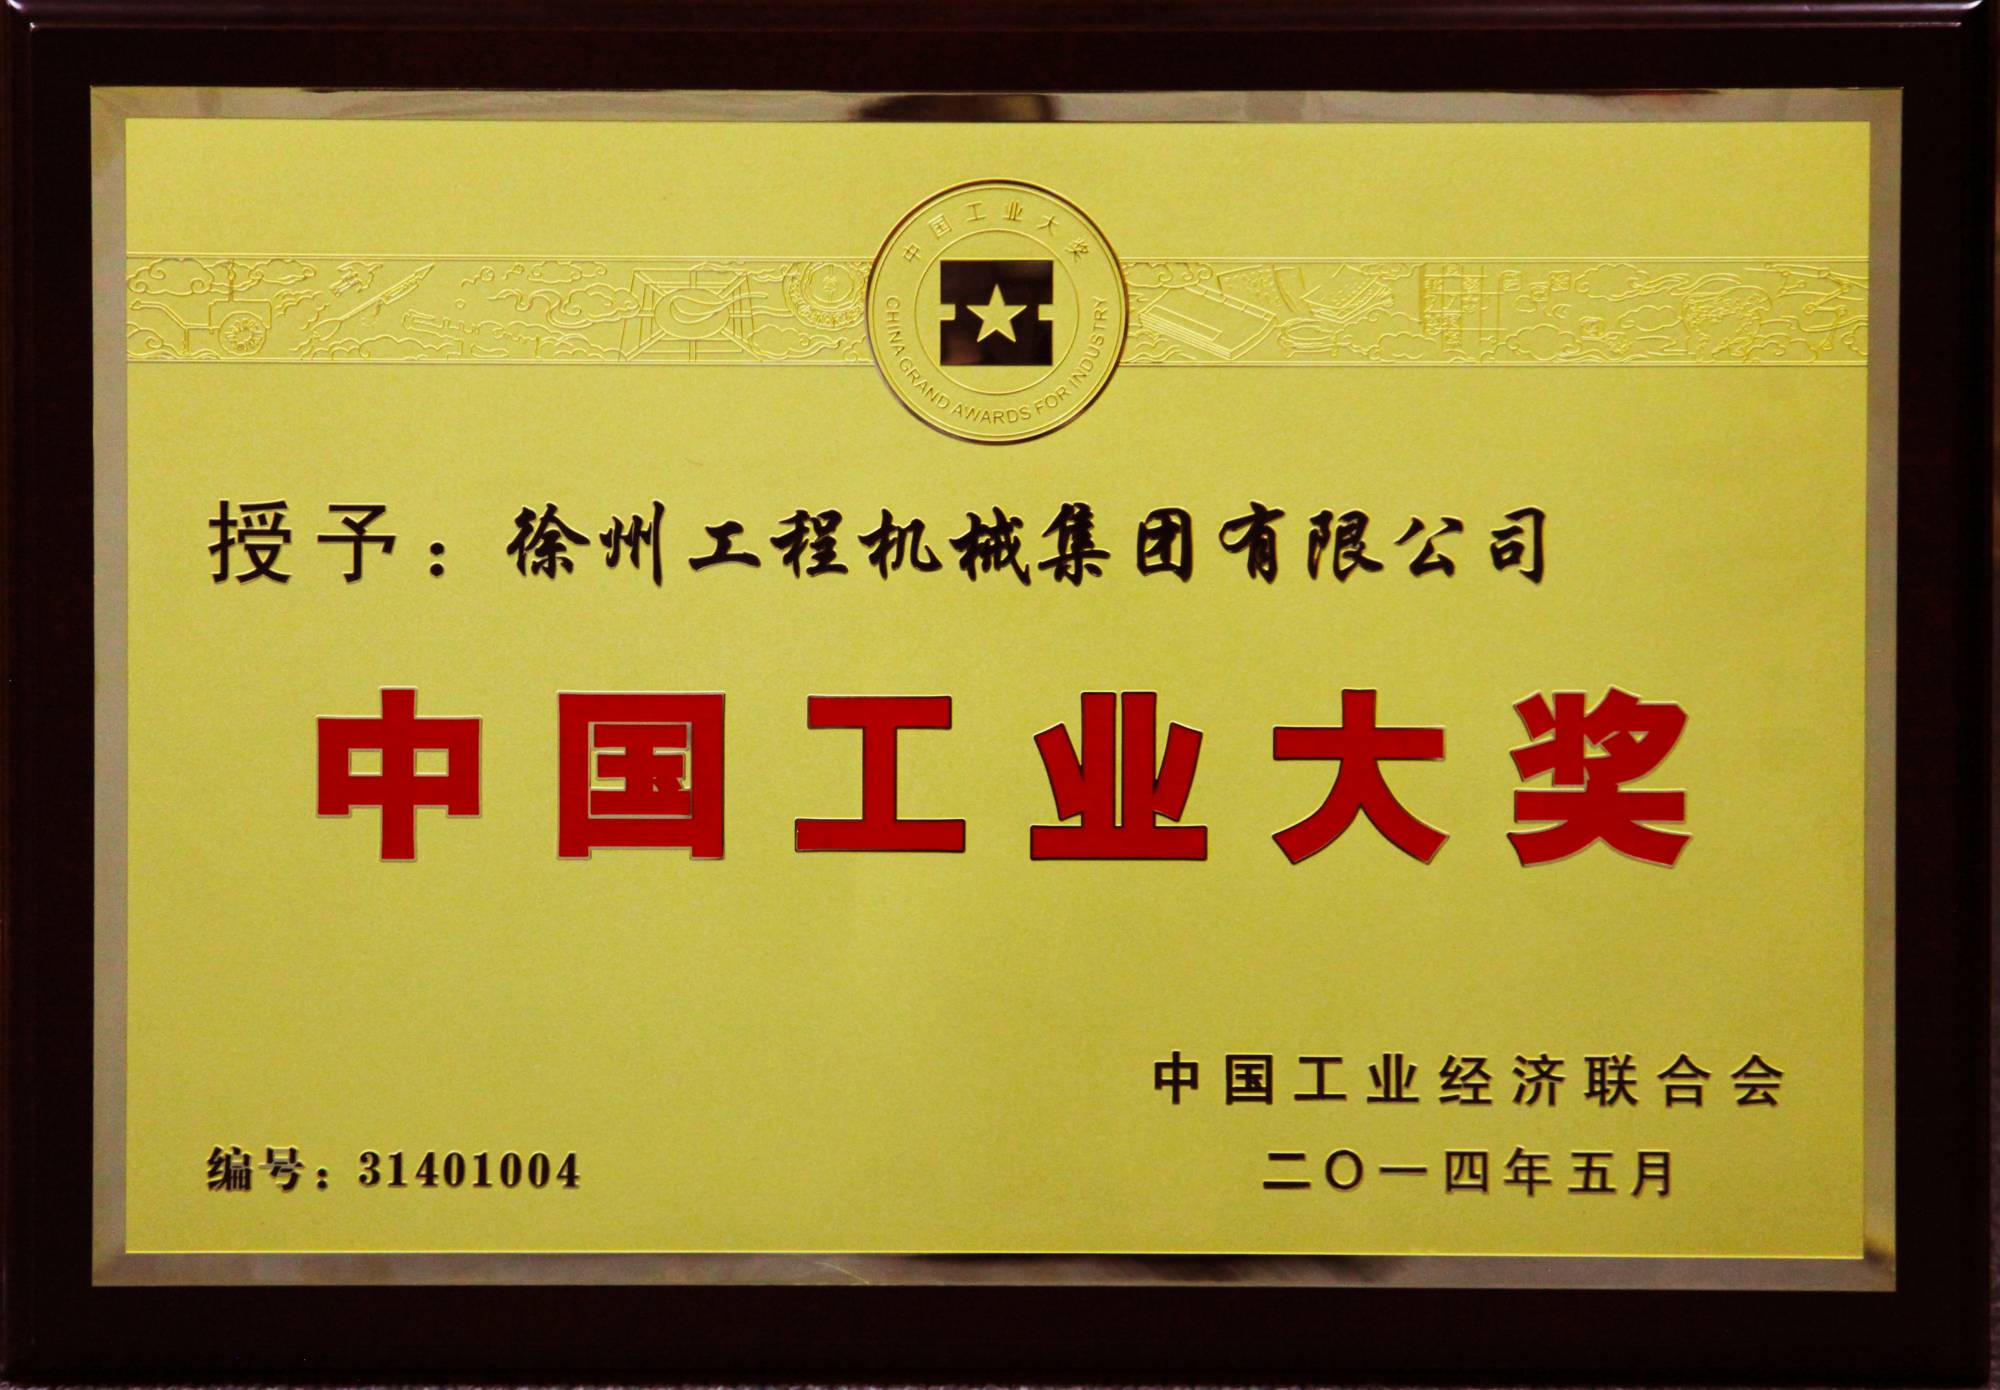 尊龙凯时荣膺行业唯一的中国工业领域最高奖项——中国工业大奖